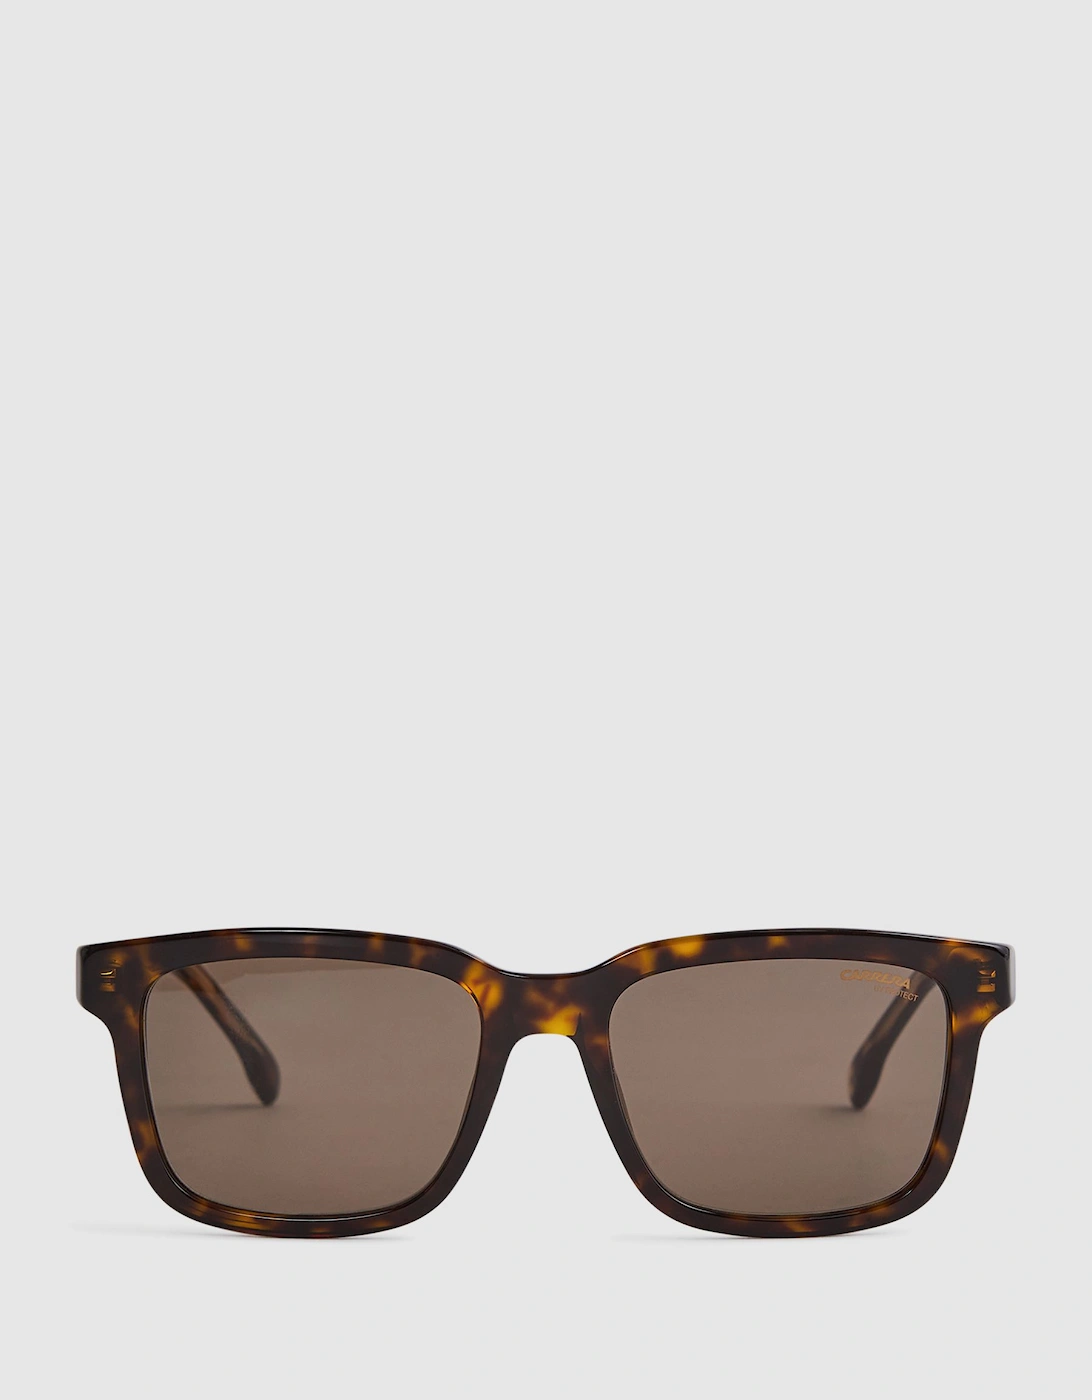 Carrera Eyewear Square Tortoiseshell Sunglasses, 2 of 1